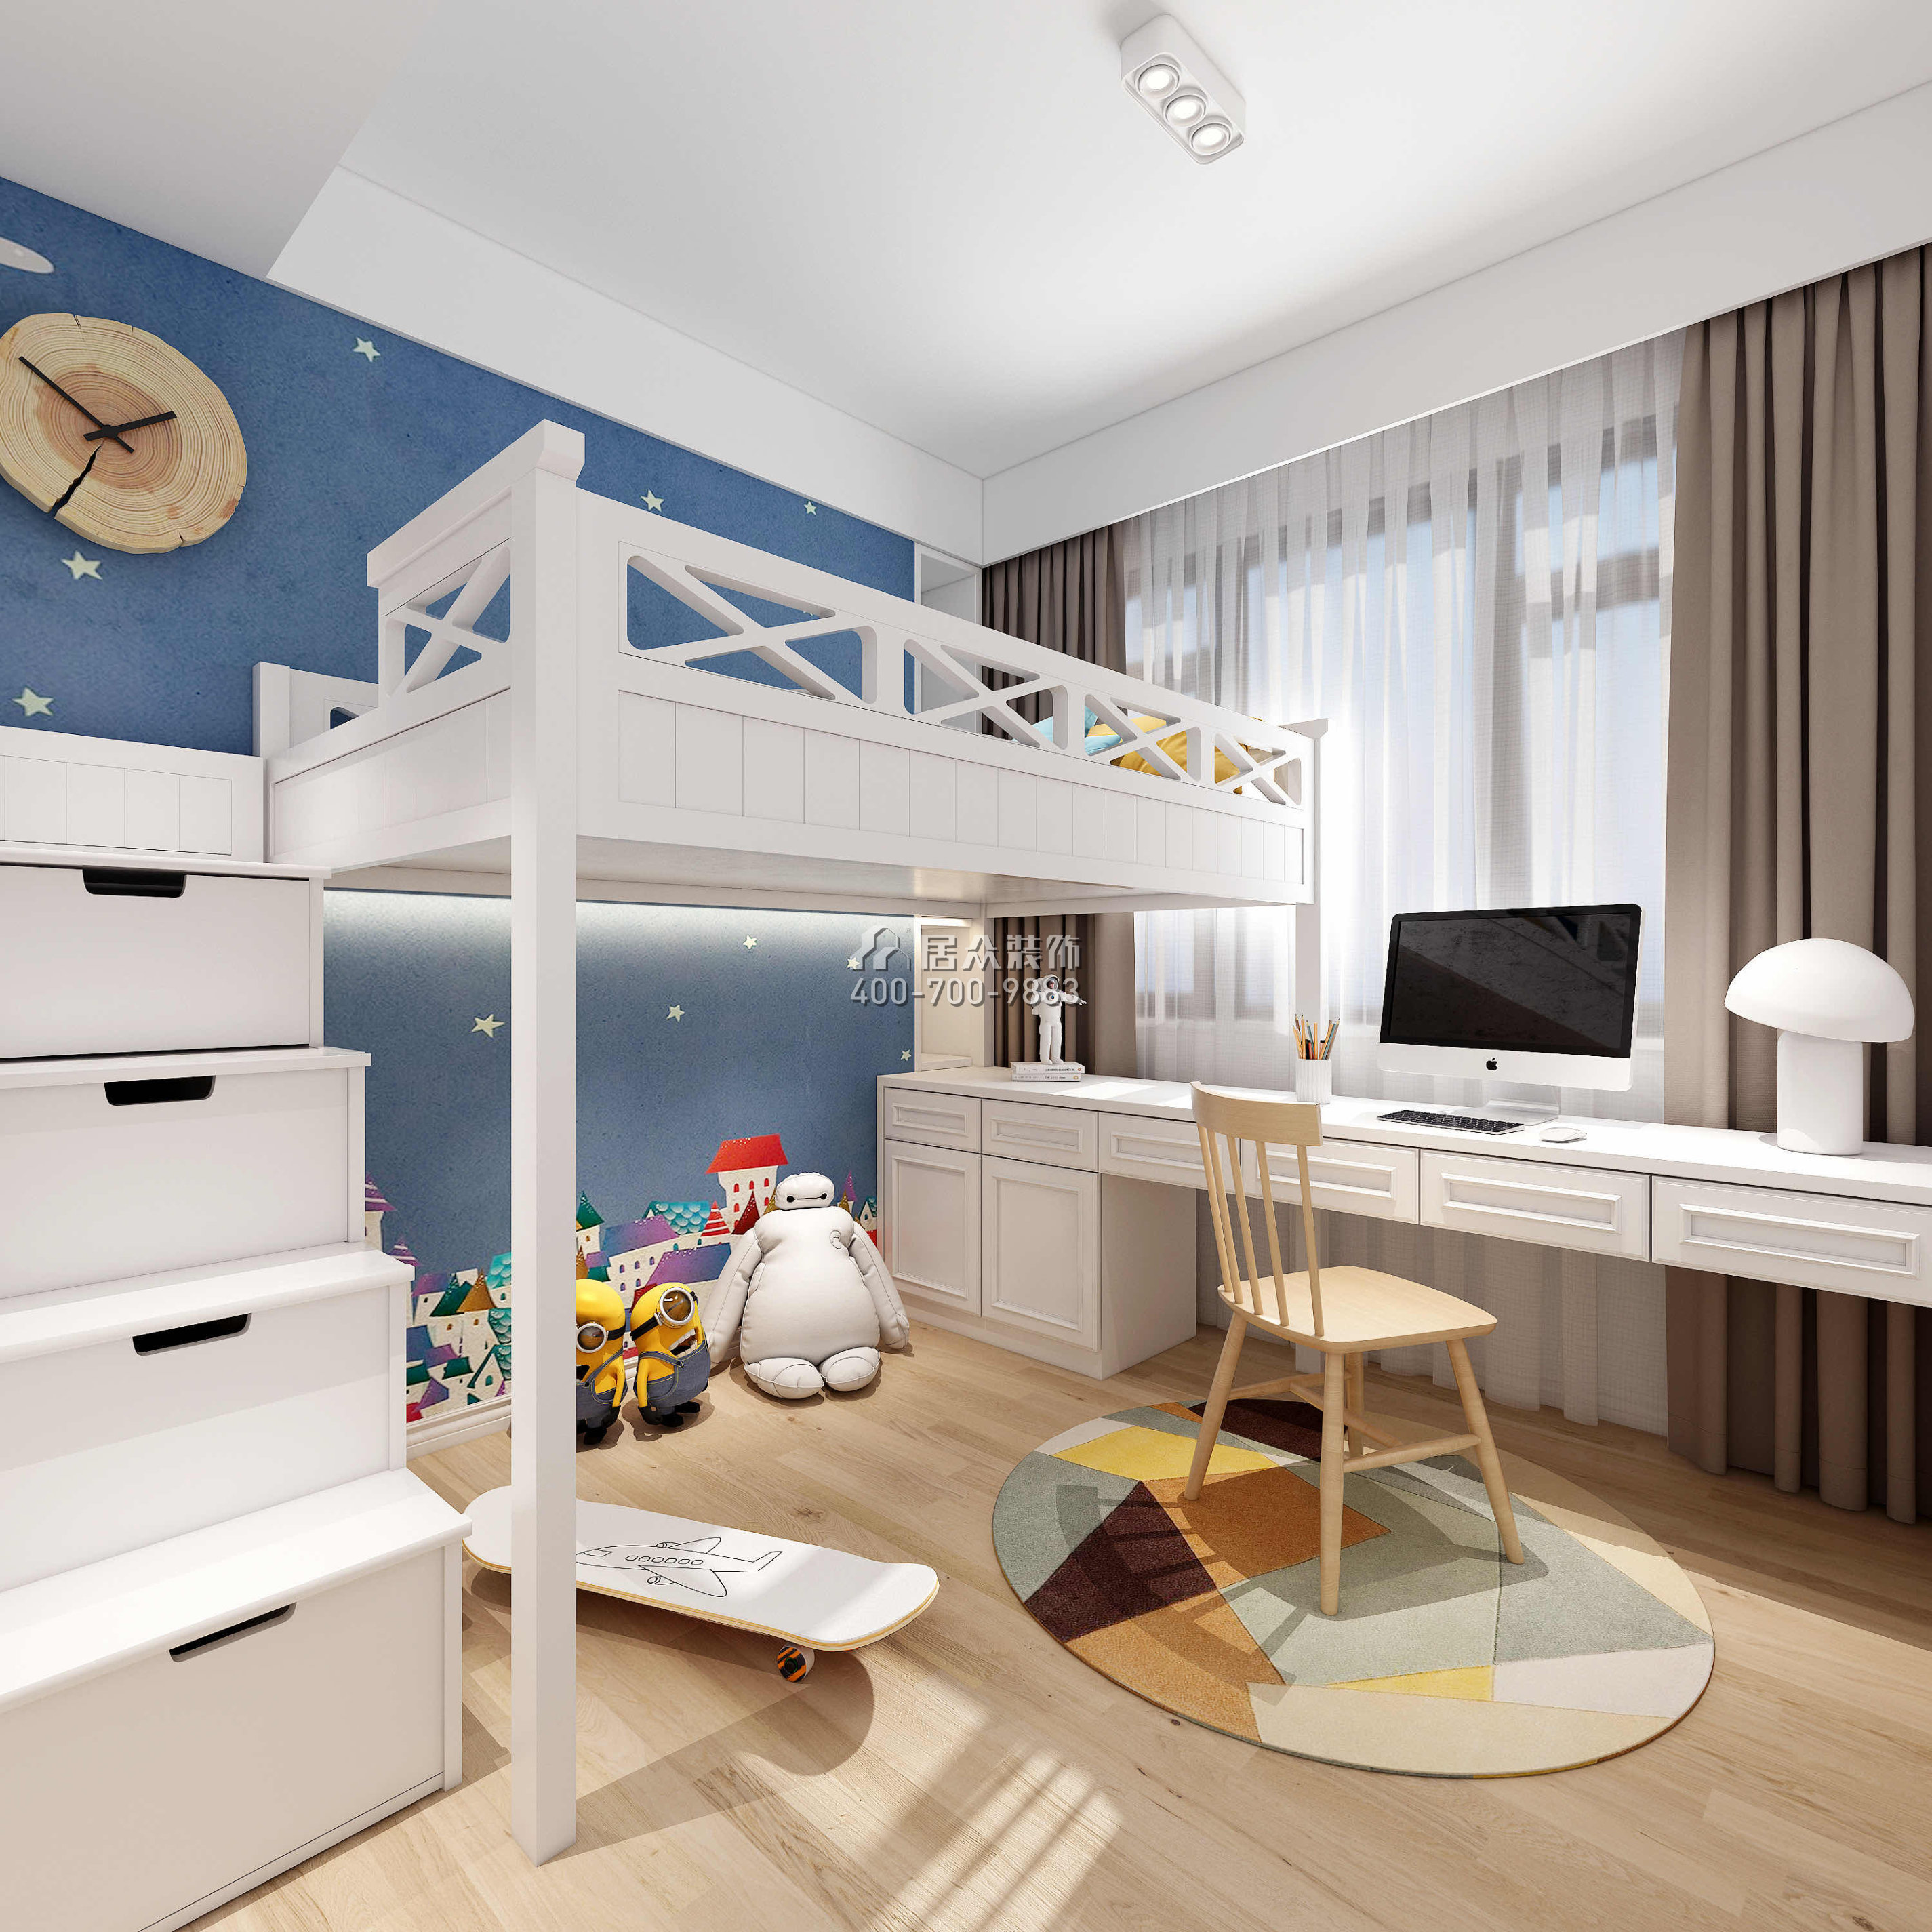 勤誠達正大城103平方米北歐風格平層戶型兒童房裝修效果圖